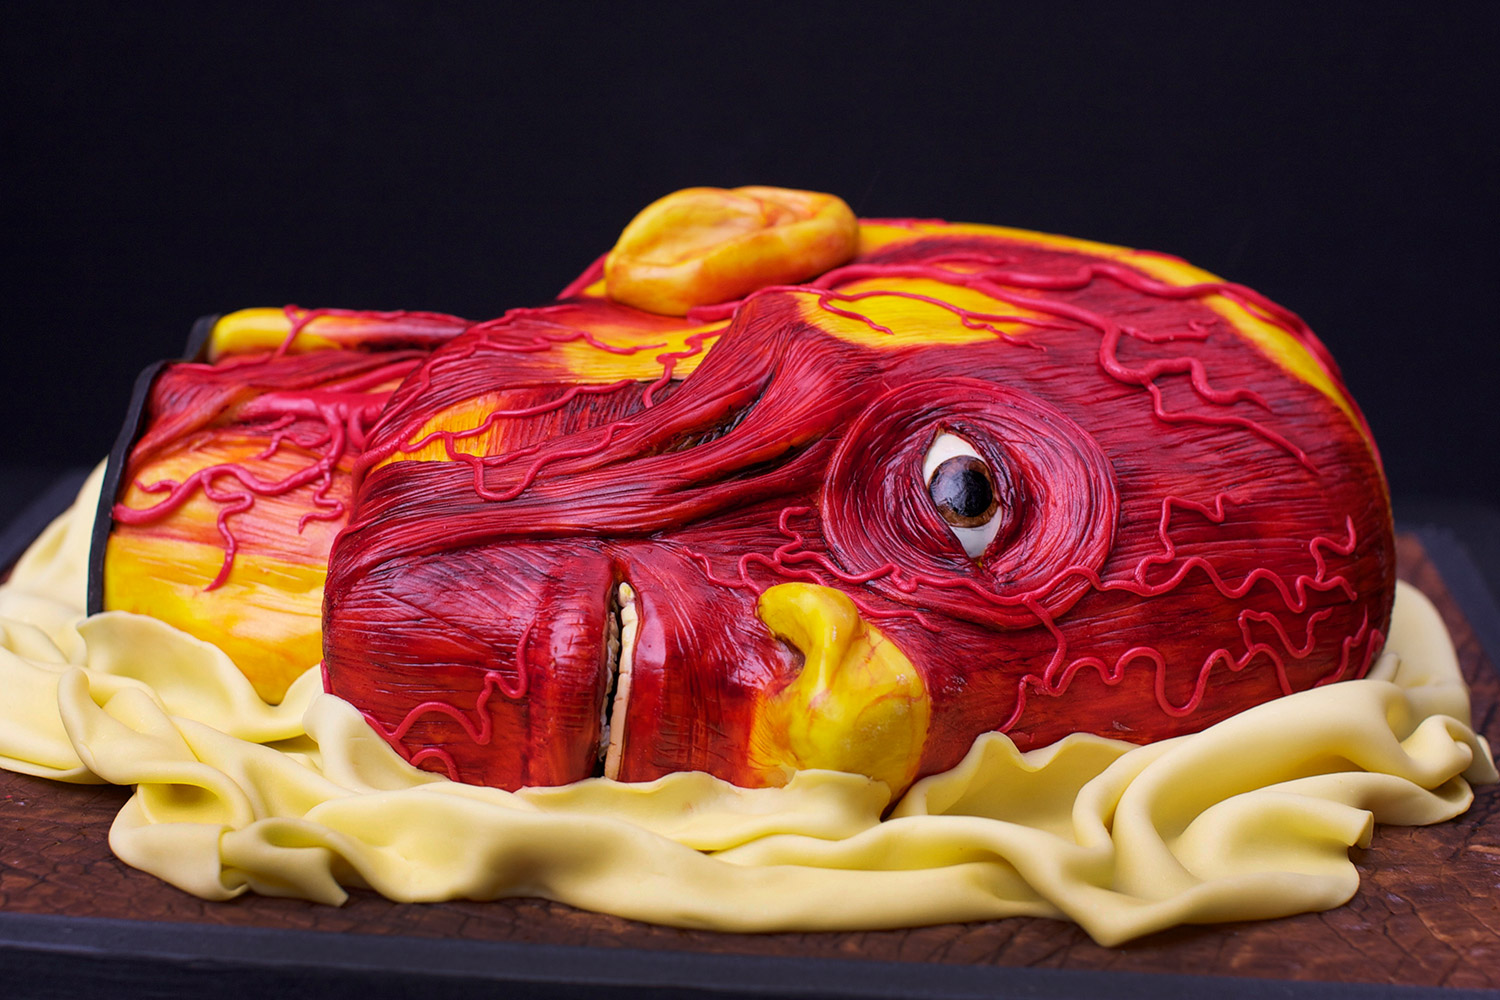 Annabel de Vetten, Conjurer's Kitchen - anatomical head cake